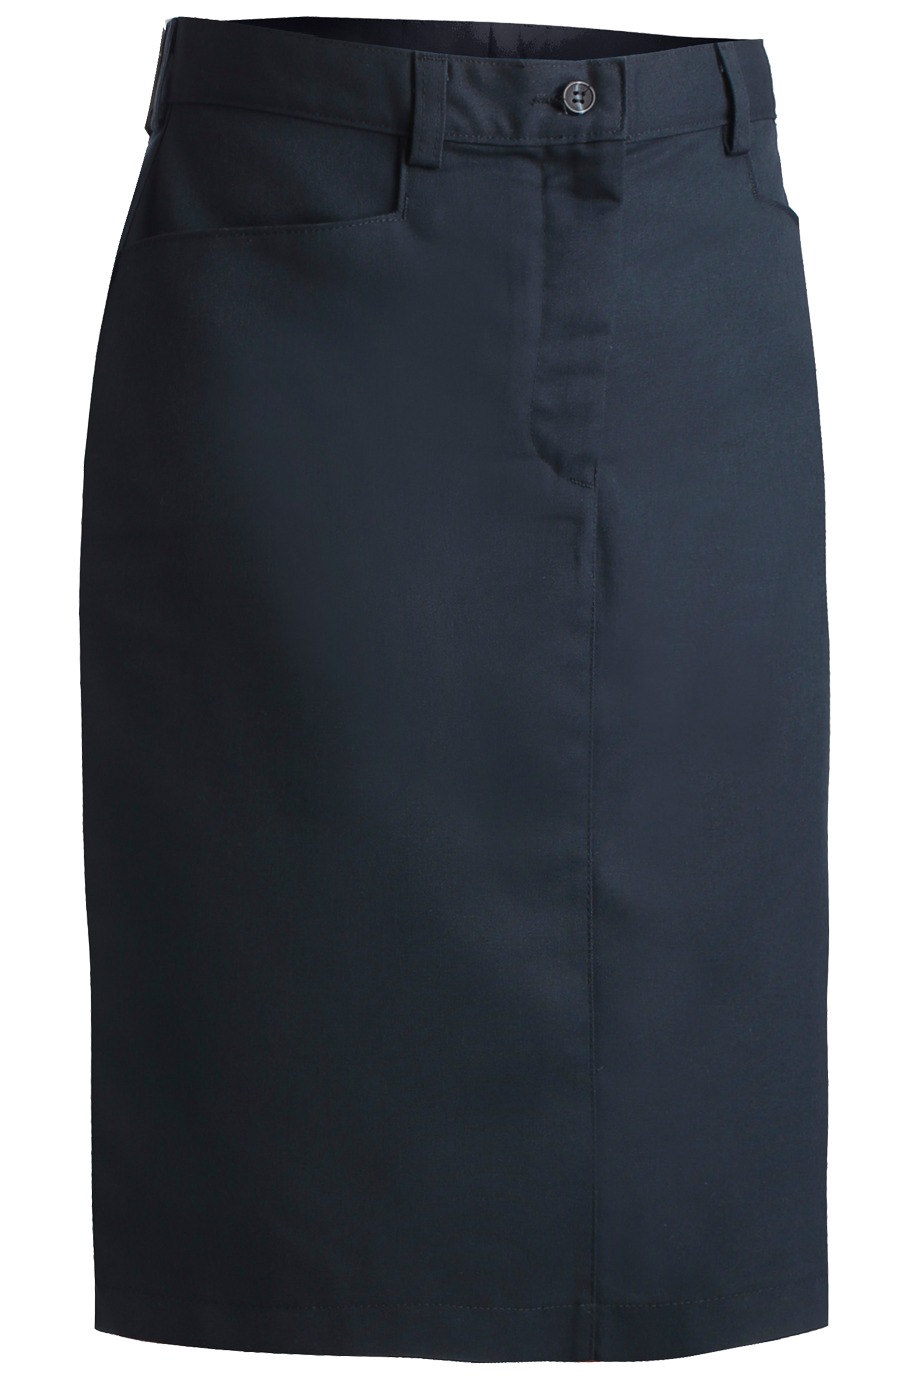 Edwards Garment 9711 - Women's Chino Skirt